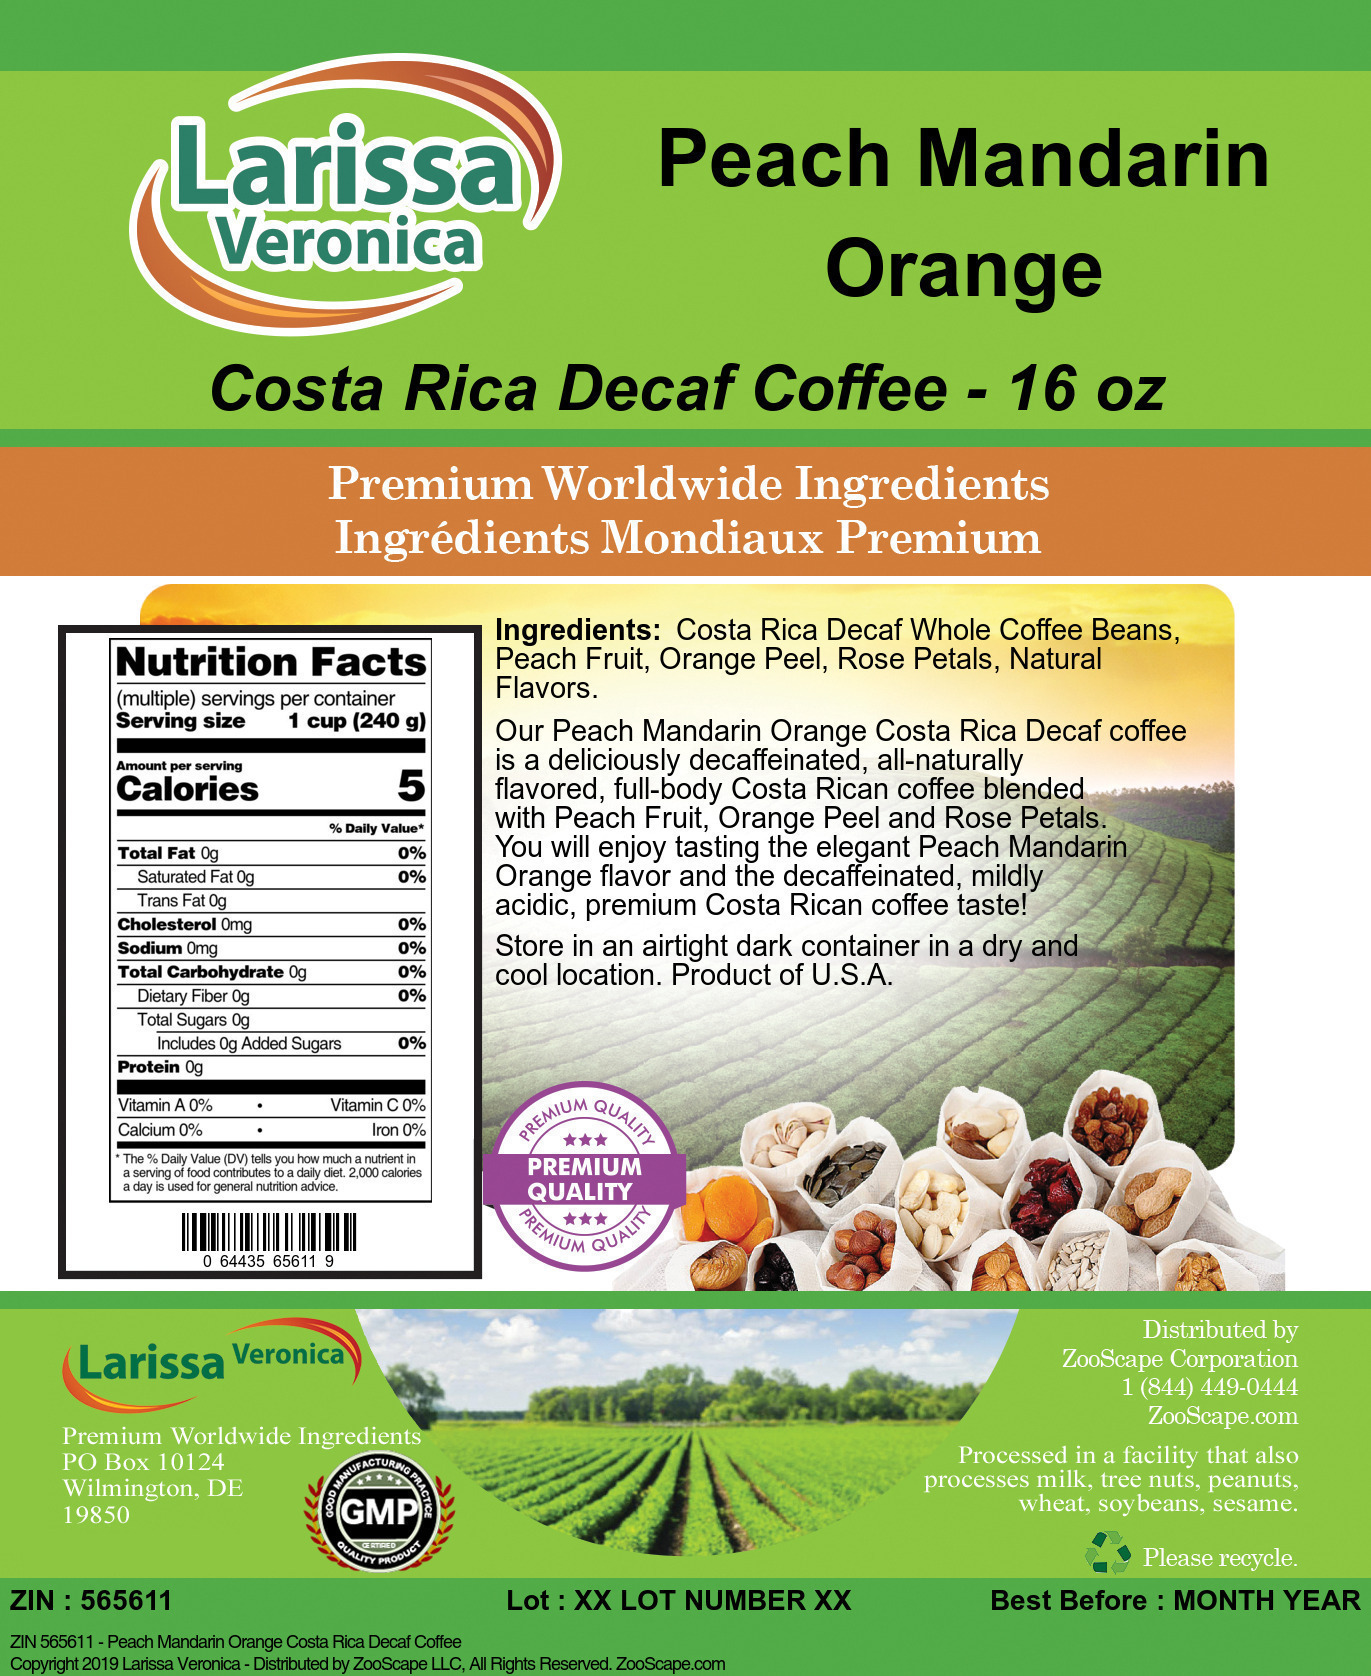 Peach Mandarin Orange Costa Rica Decaf Coffee - Label